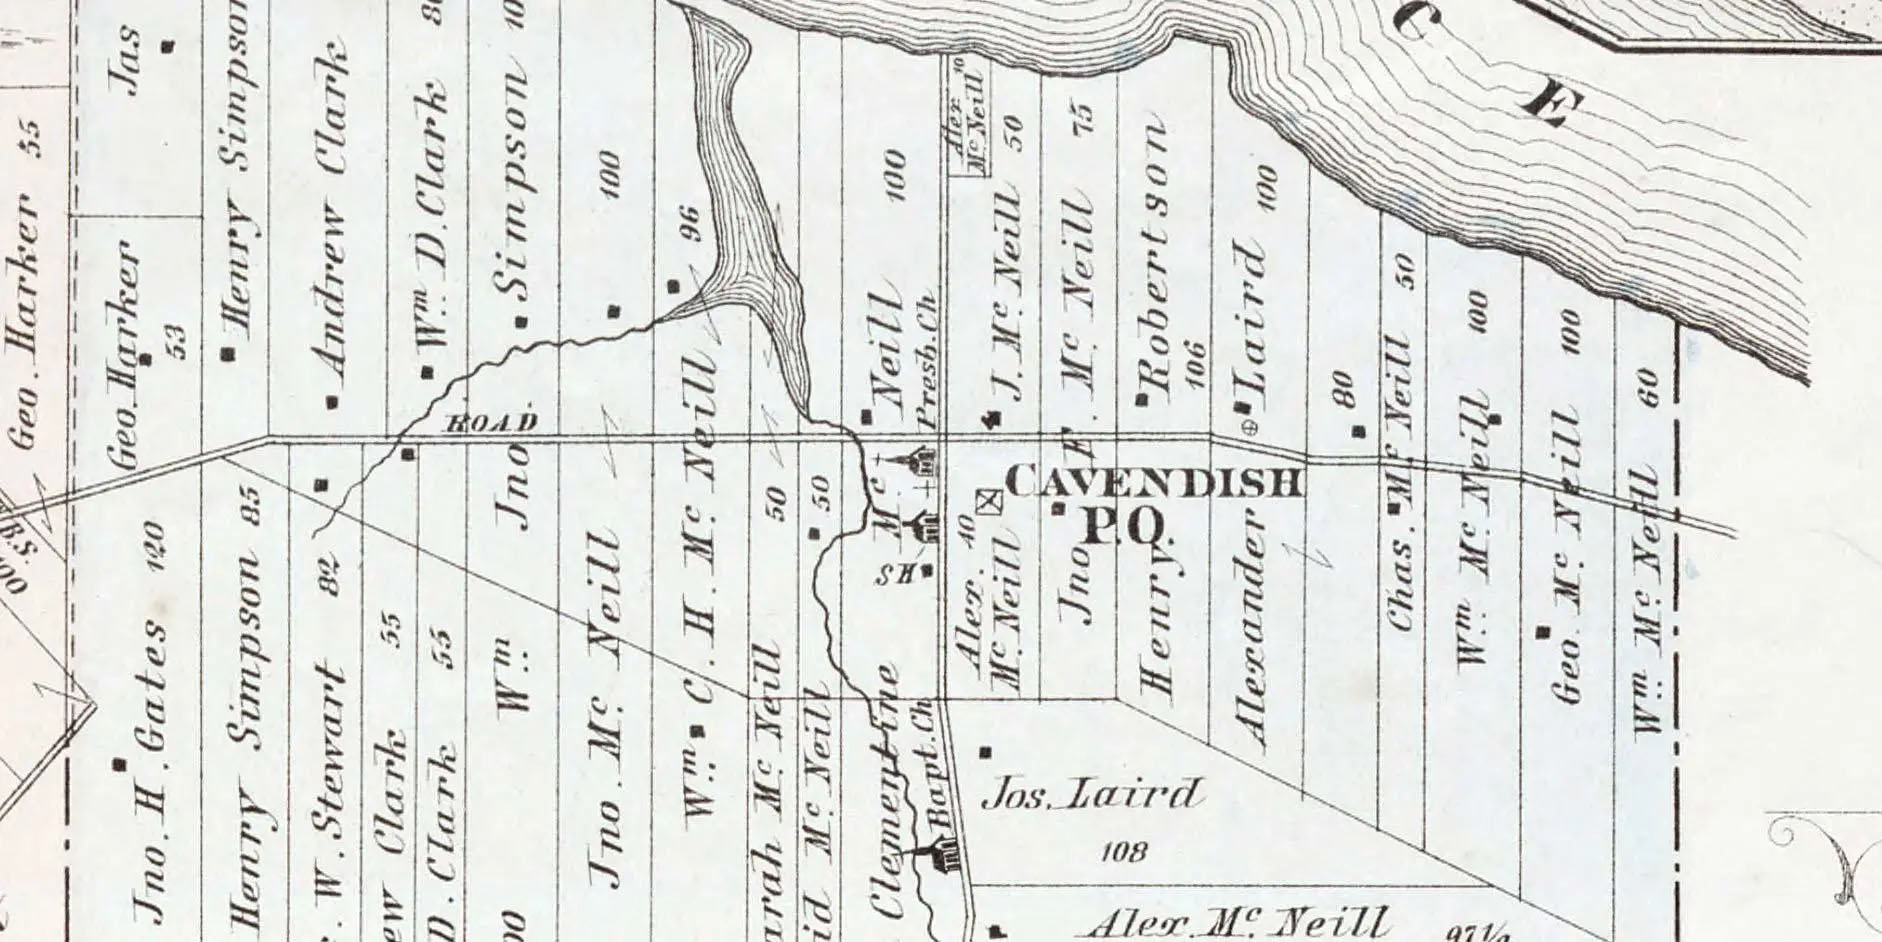 Plan en noir et blanc définissant les limites des nombreuses fermes rectangulaires près du carrefour à Cavendish, chacune identifiée par le nom du propriétaire.